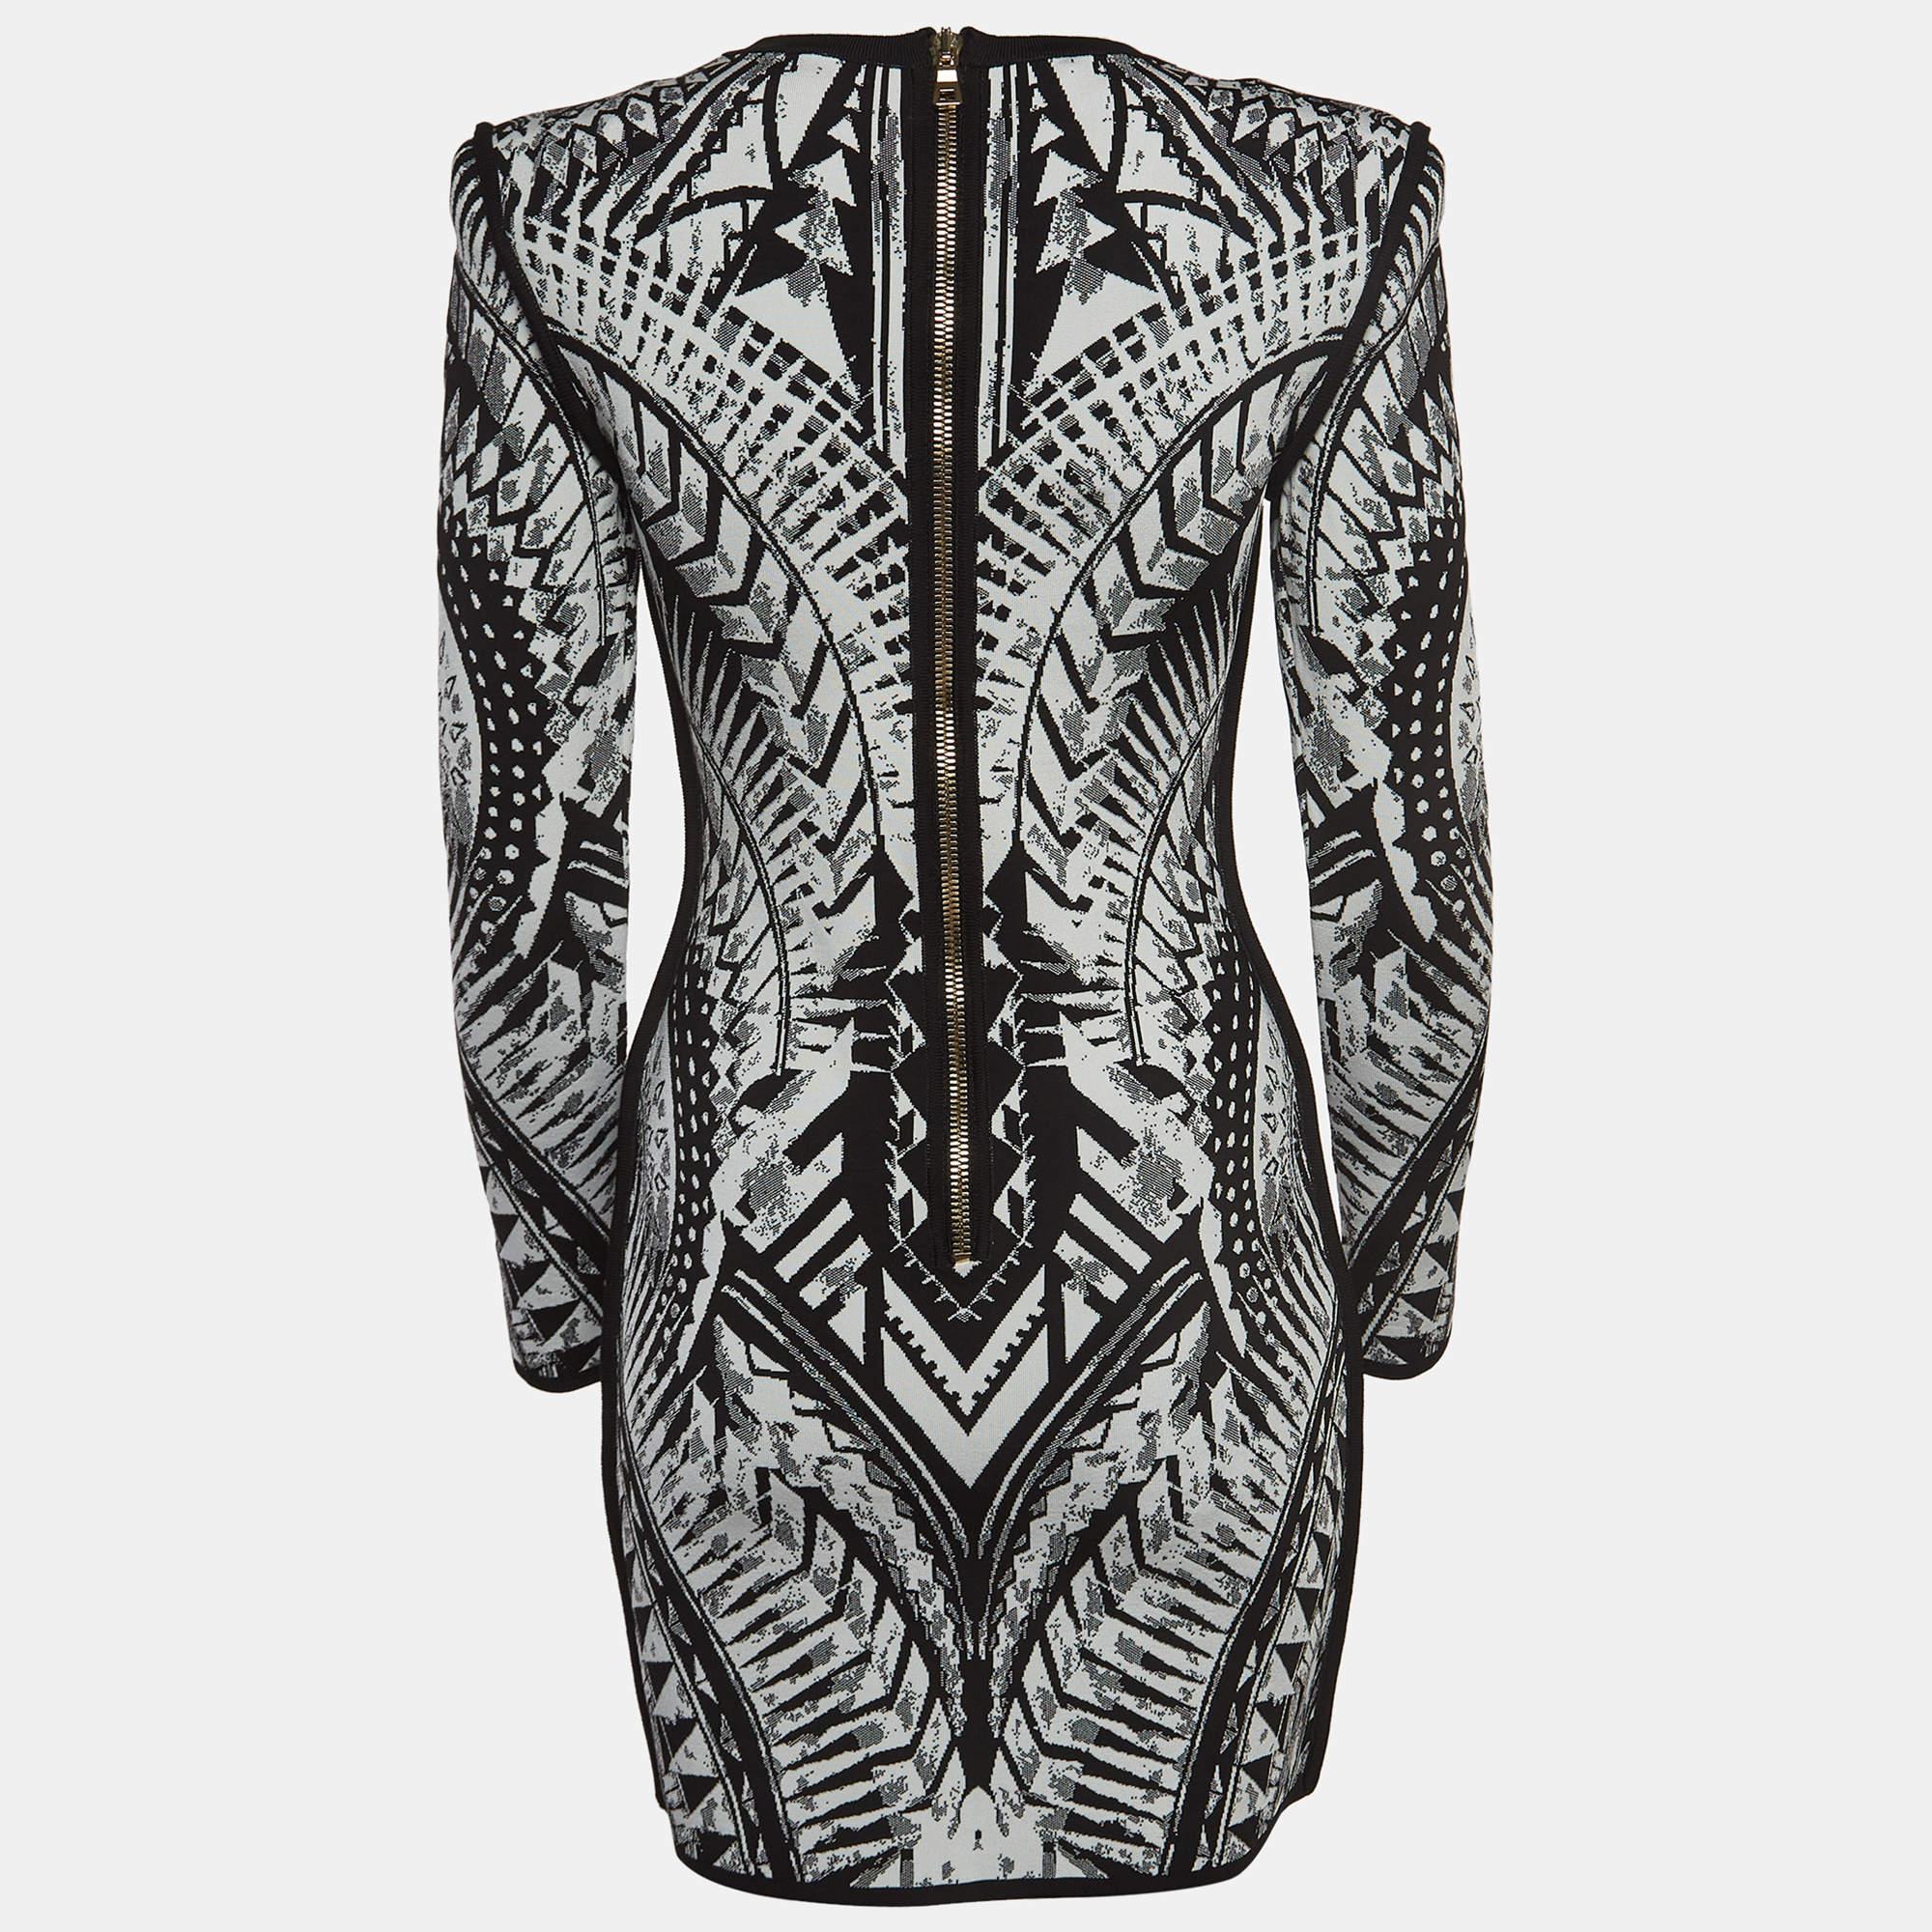 La robe bodycon Balmain respire la sophistication avec son motif jacquard au tissage complexe. La silhouette form A accentue les courbes, tandis que la palette monochromatique ajoute une élégance intemporelle à cette mini robe, parfaite pour les